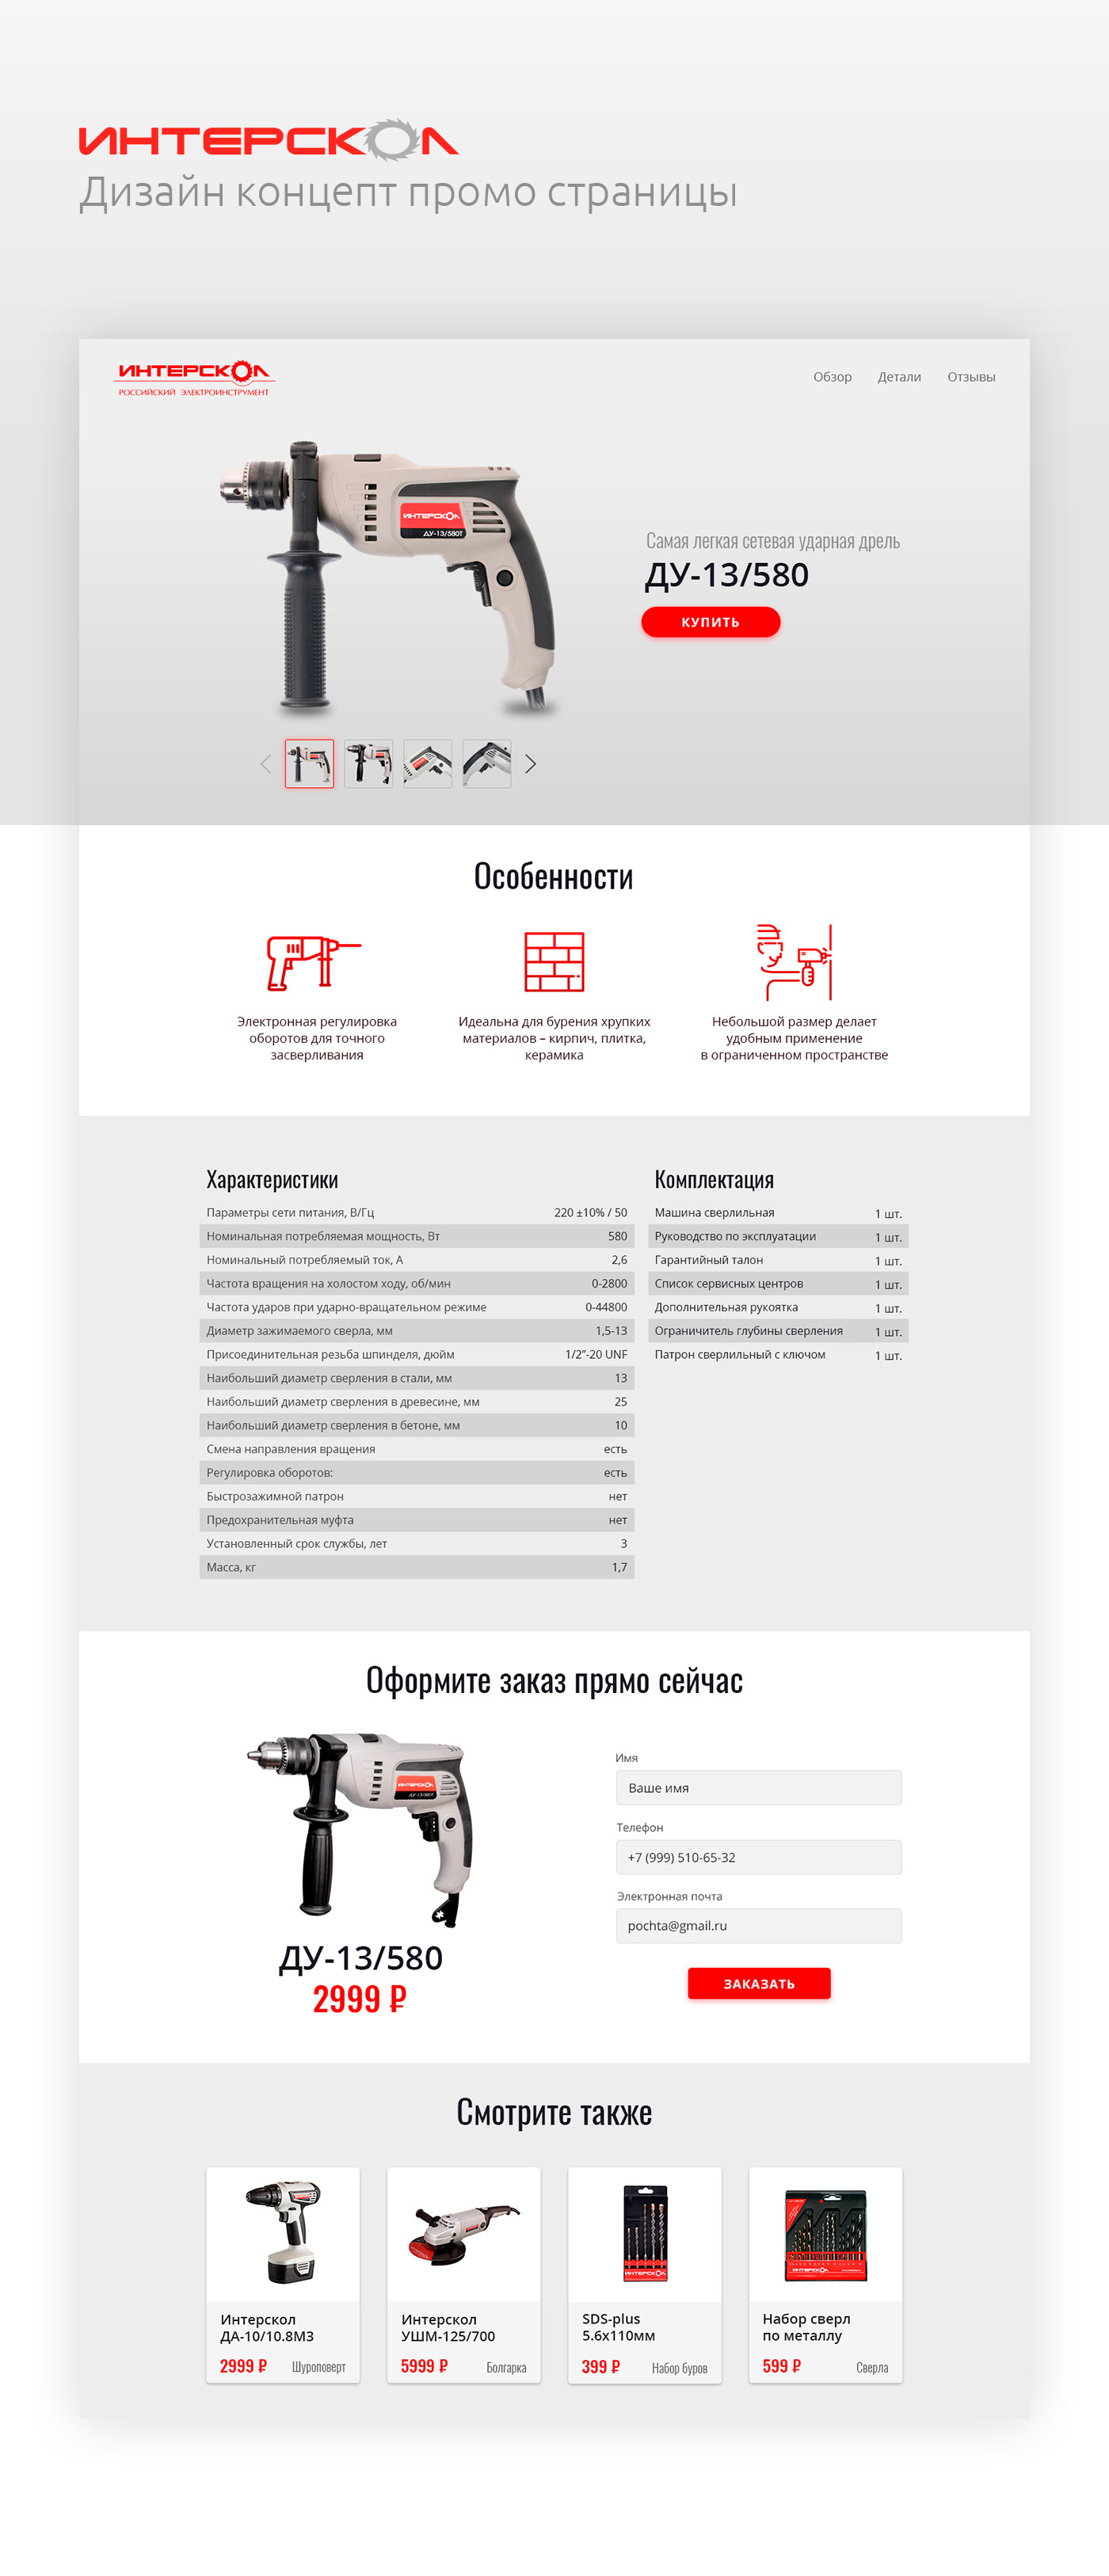 web-design concept site design landing page Web prototype